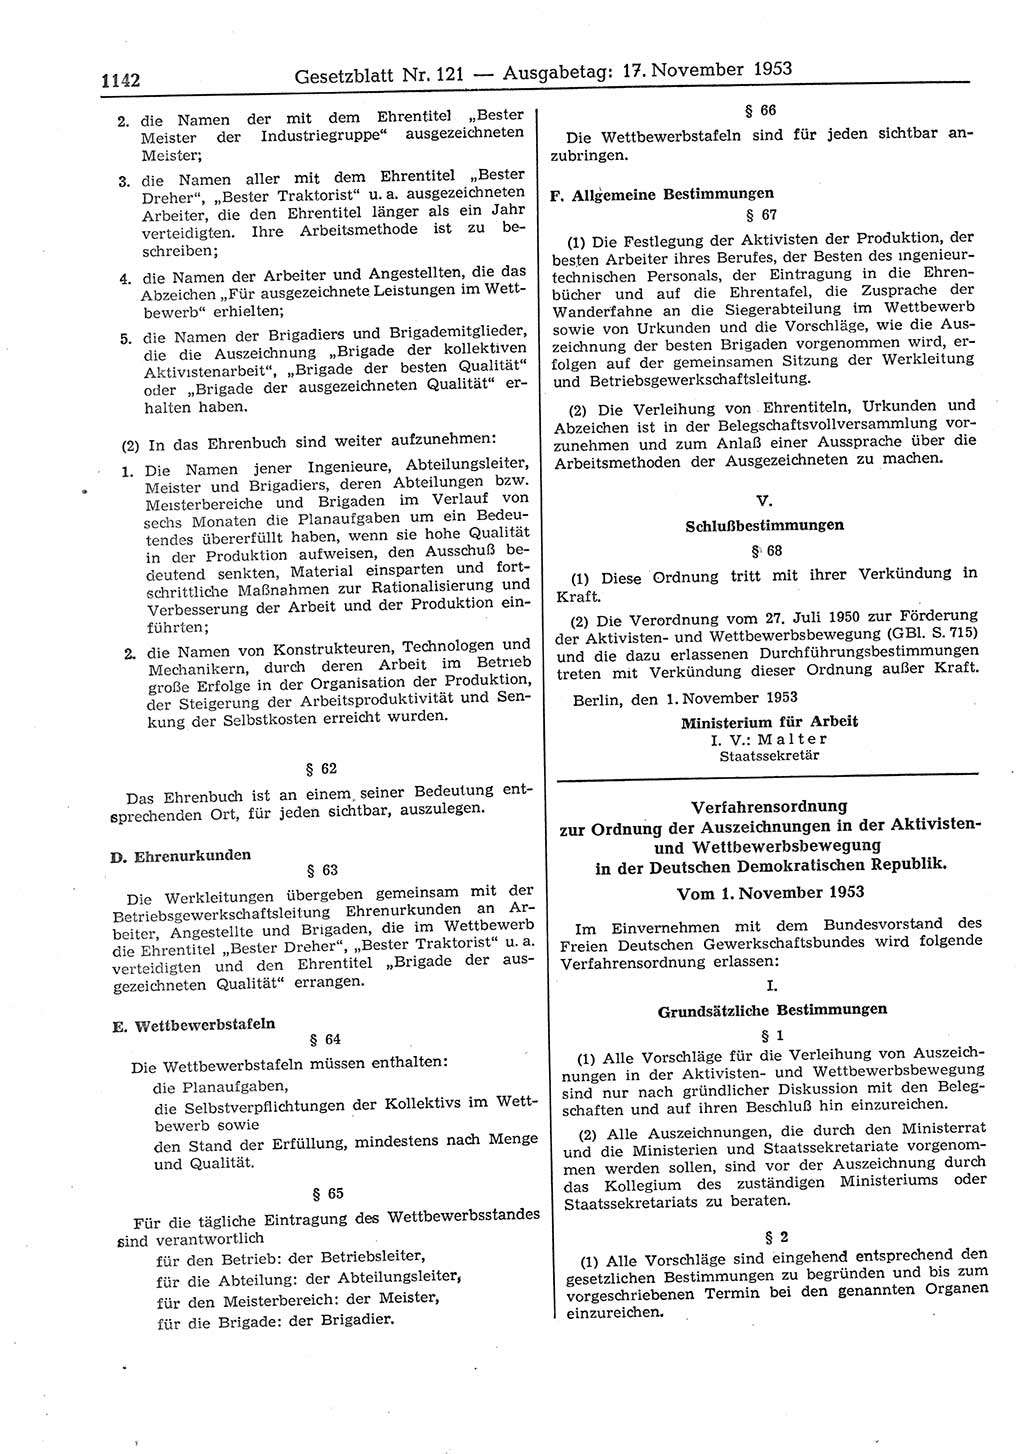 Gesetzblatt (GBl.) der Deutschen Demokratischen Republik (DDR) 1953, Seite 1142 (GBl. DDR 1953, S. 1142)